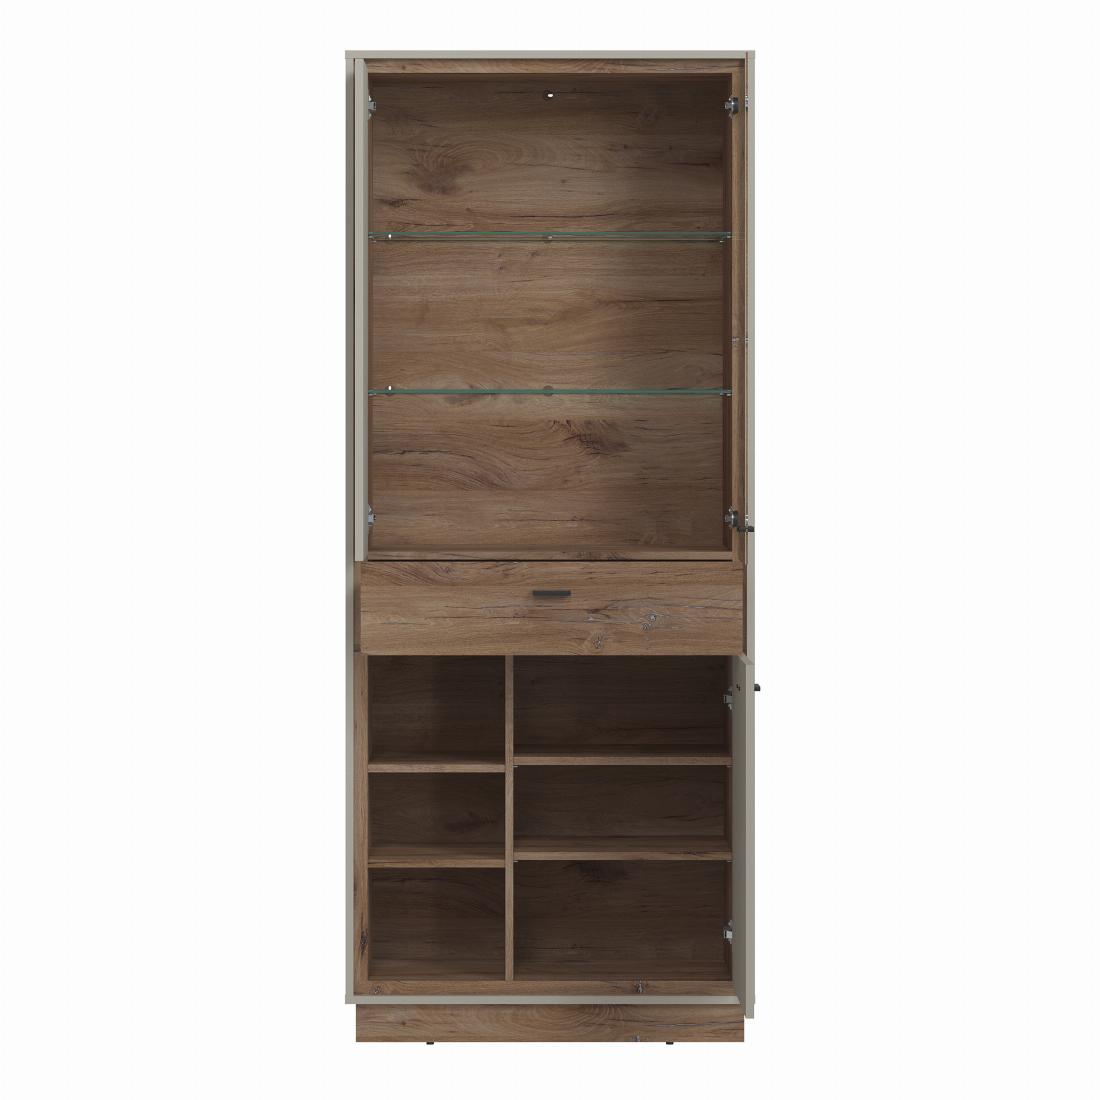 Rivero 3 Door 1 Drawer Open Shelves Wide Display Cabinet in Grey and Oak